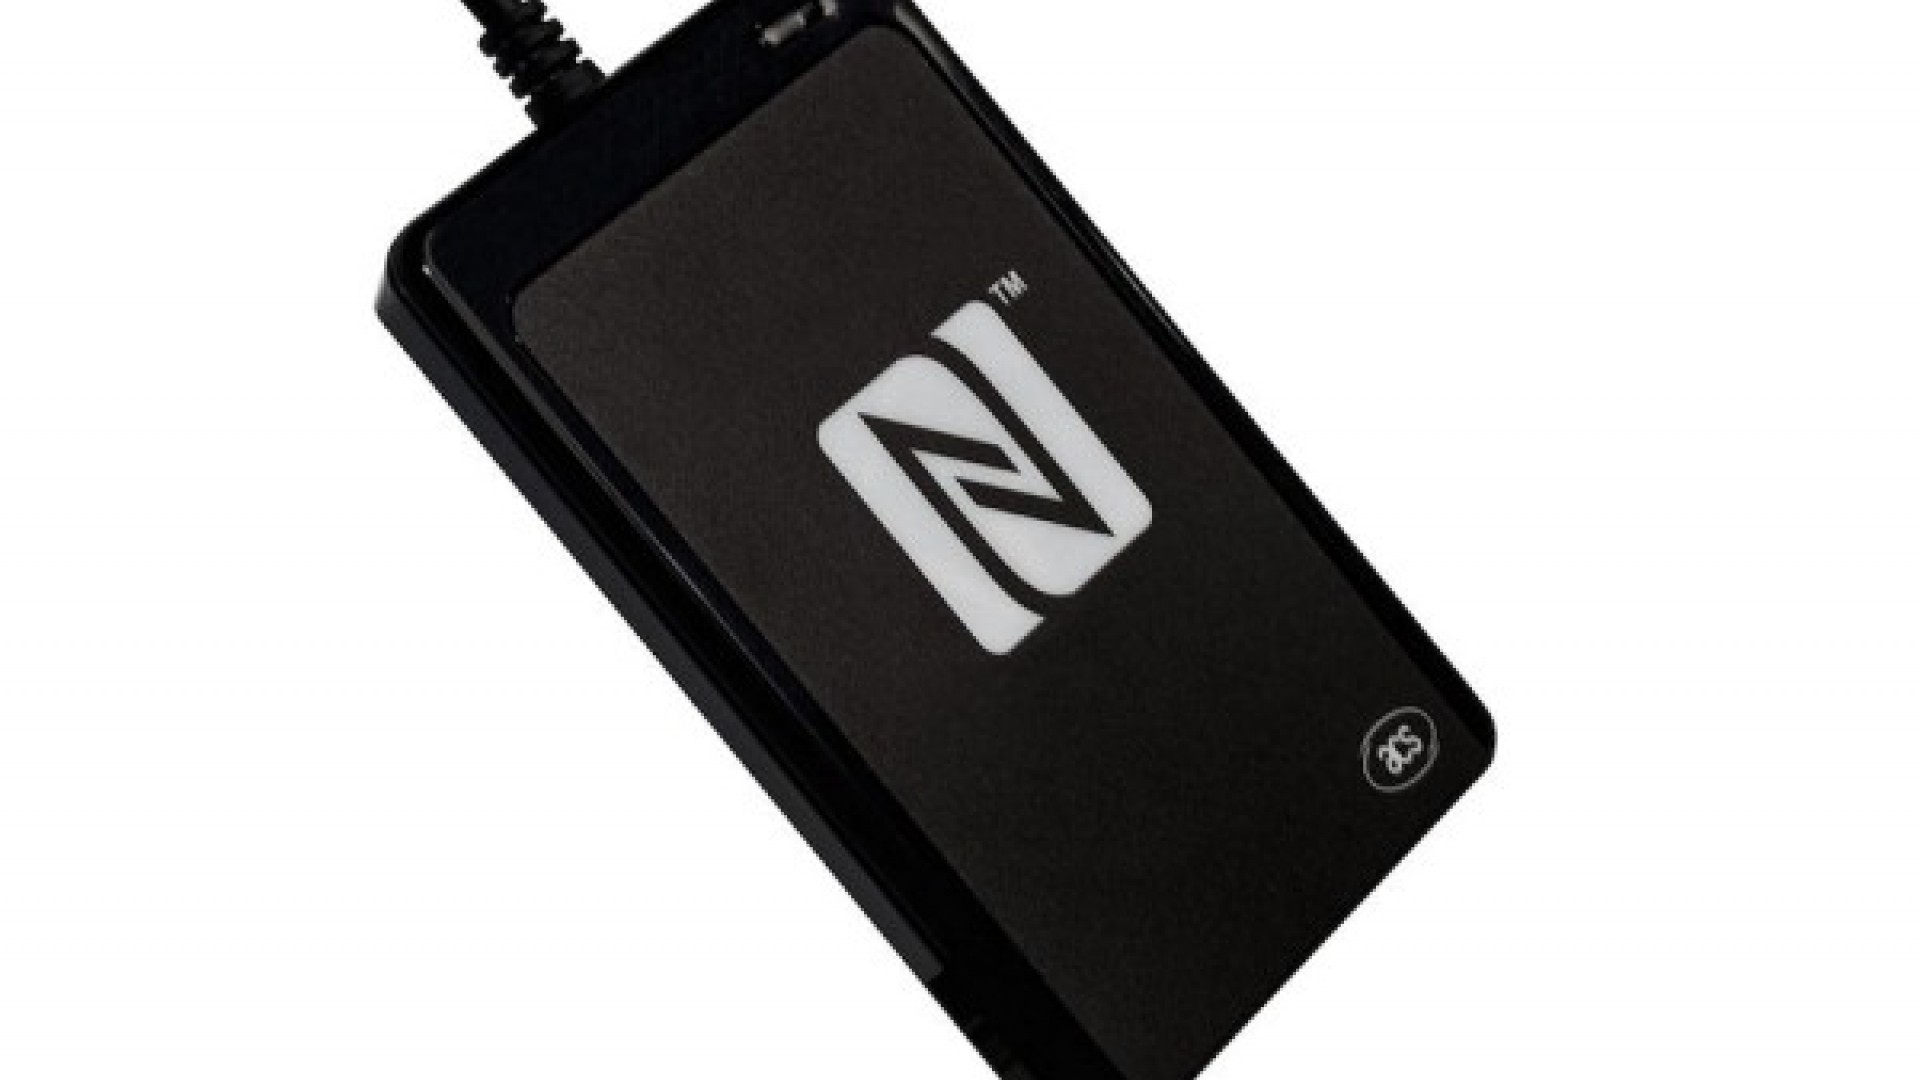 Kennen Sie schon unsere NFC-Tools?